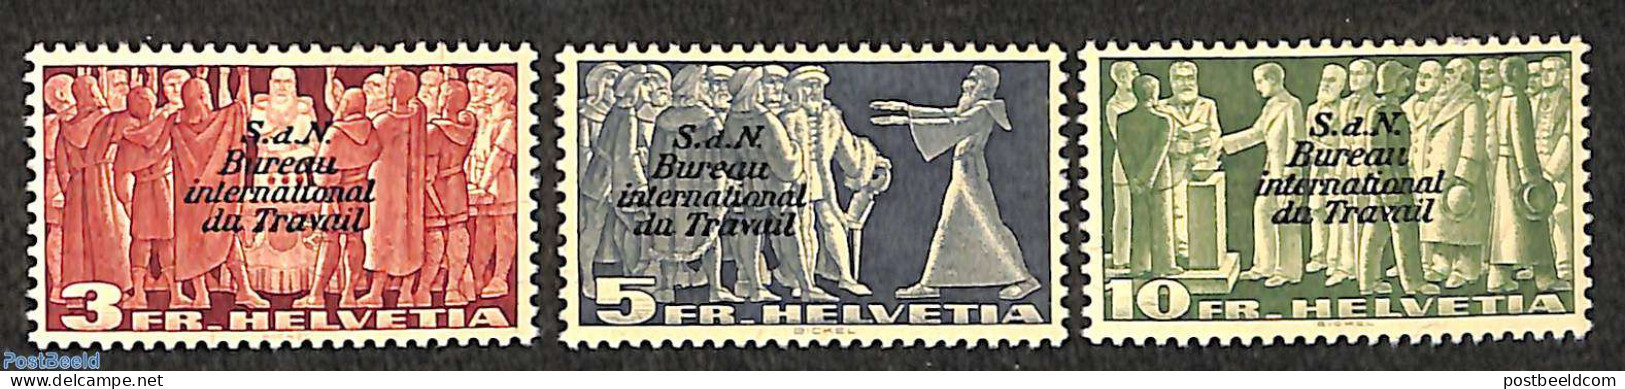 Switzerland 1939 I.L.O. Overprints 3v, Mint NH, History - I.l.o. - Neufs